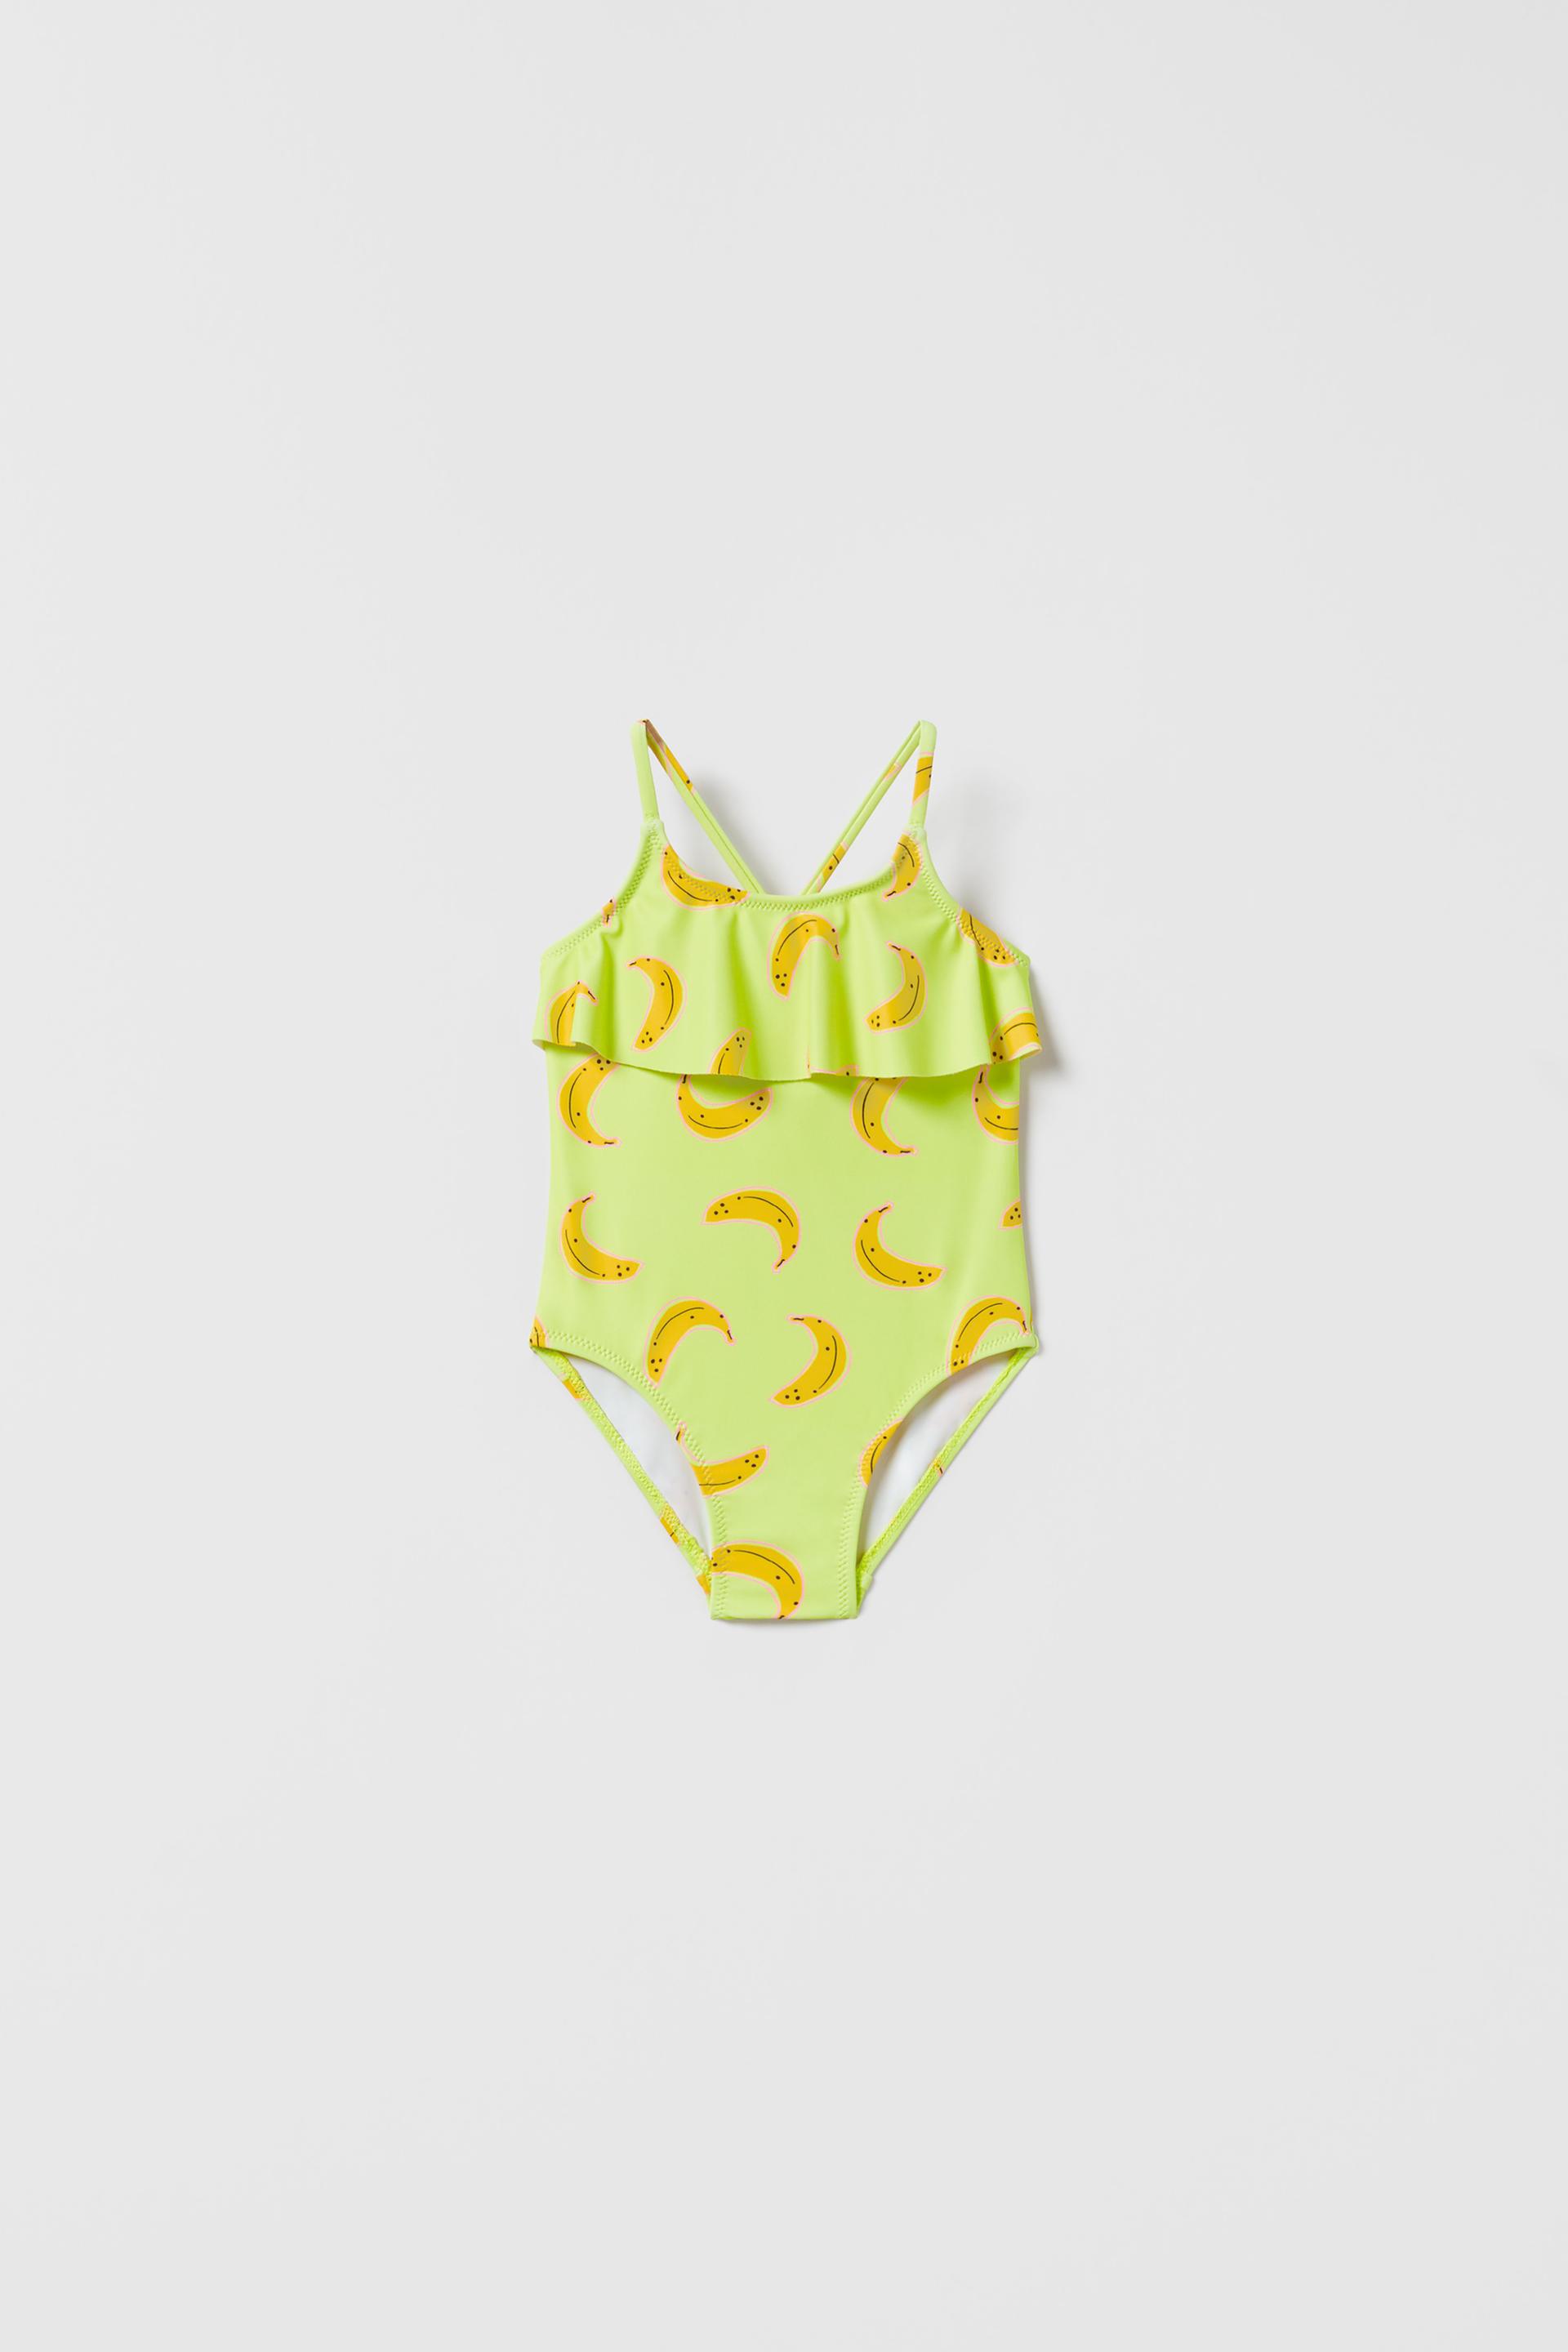 ZARA 嬰兒香蕉圖案泳衣